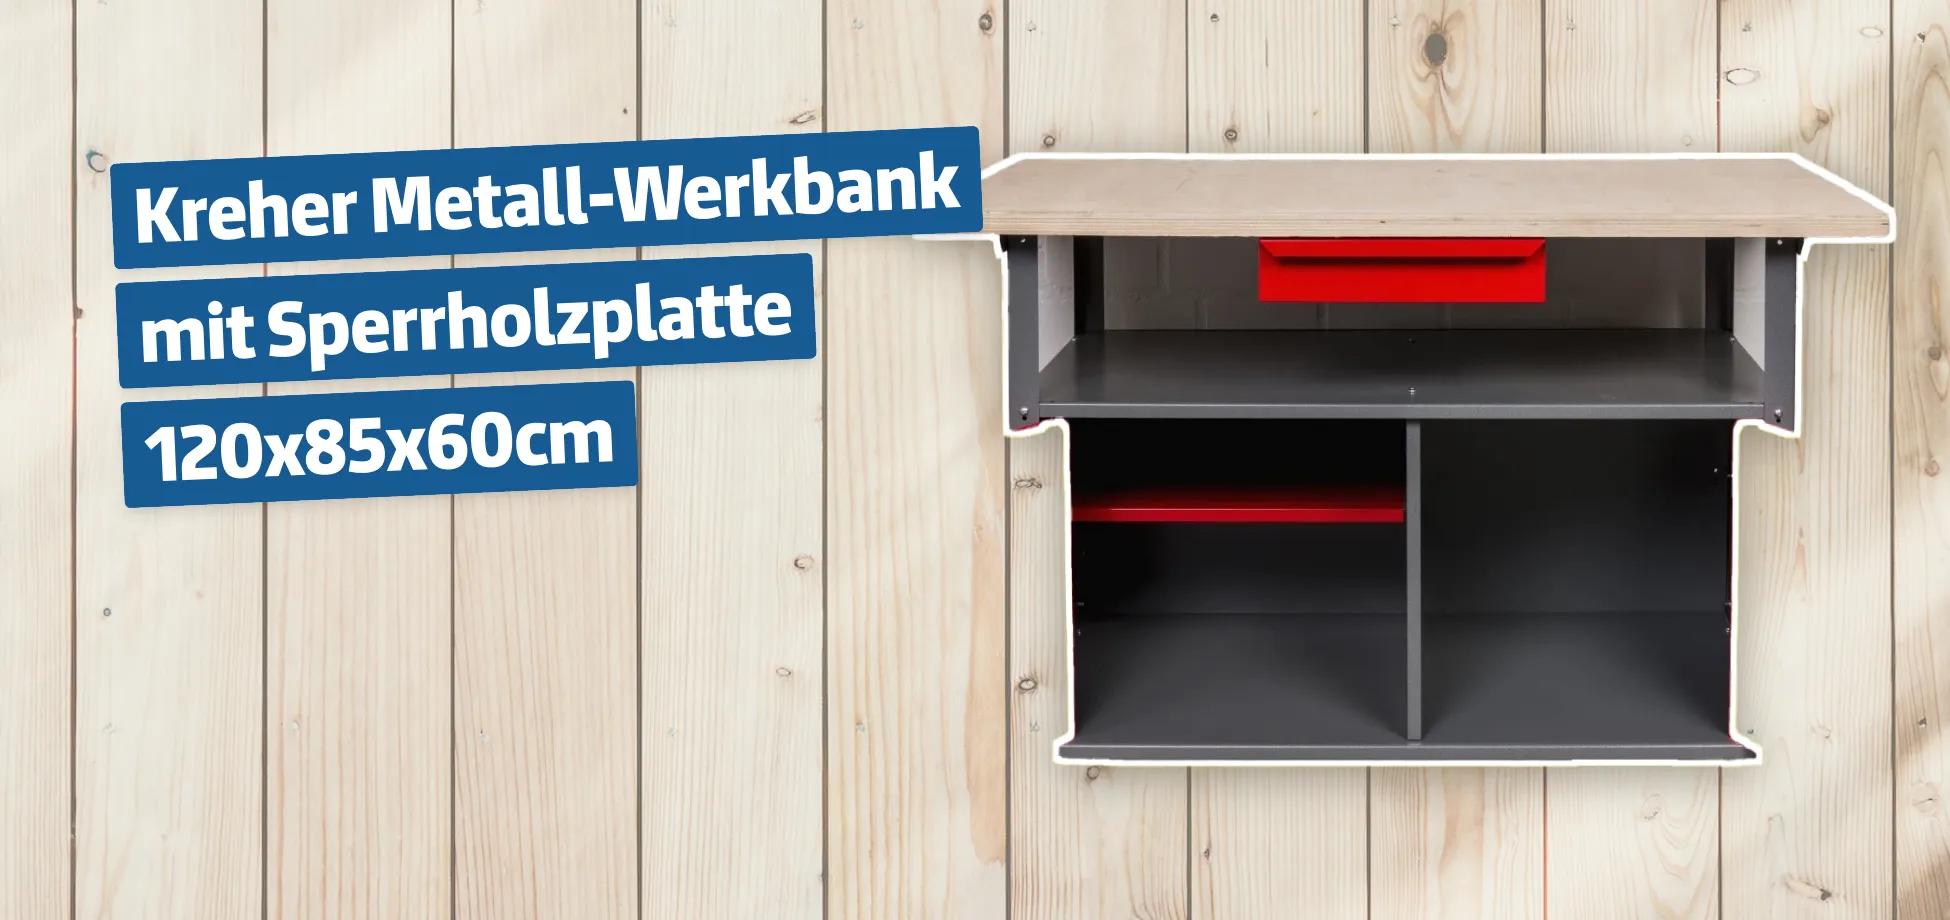 Kreher Metall-Werkbank mit Sperrholzplatte 120x85x60cm